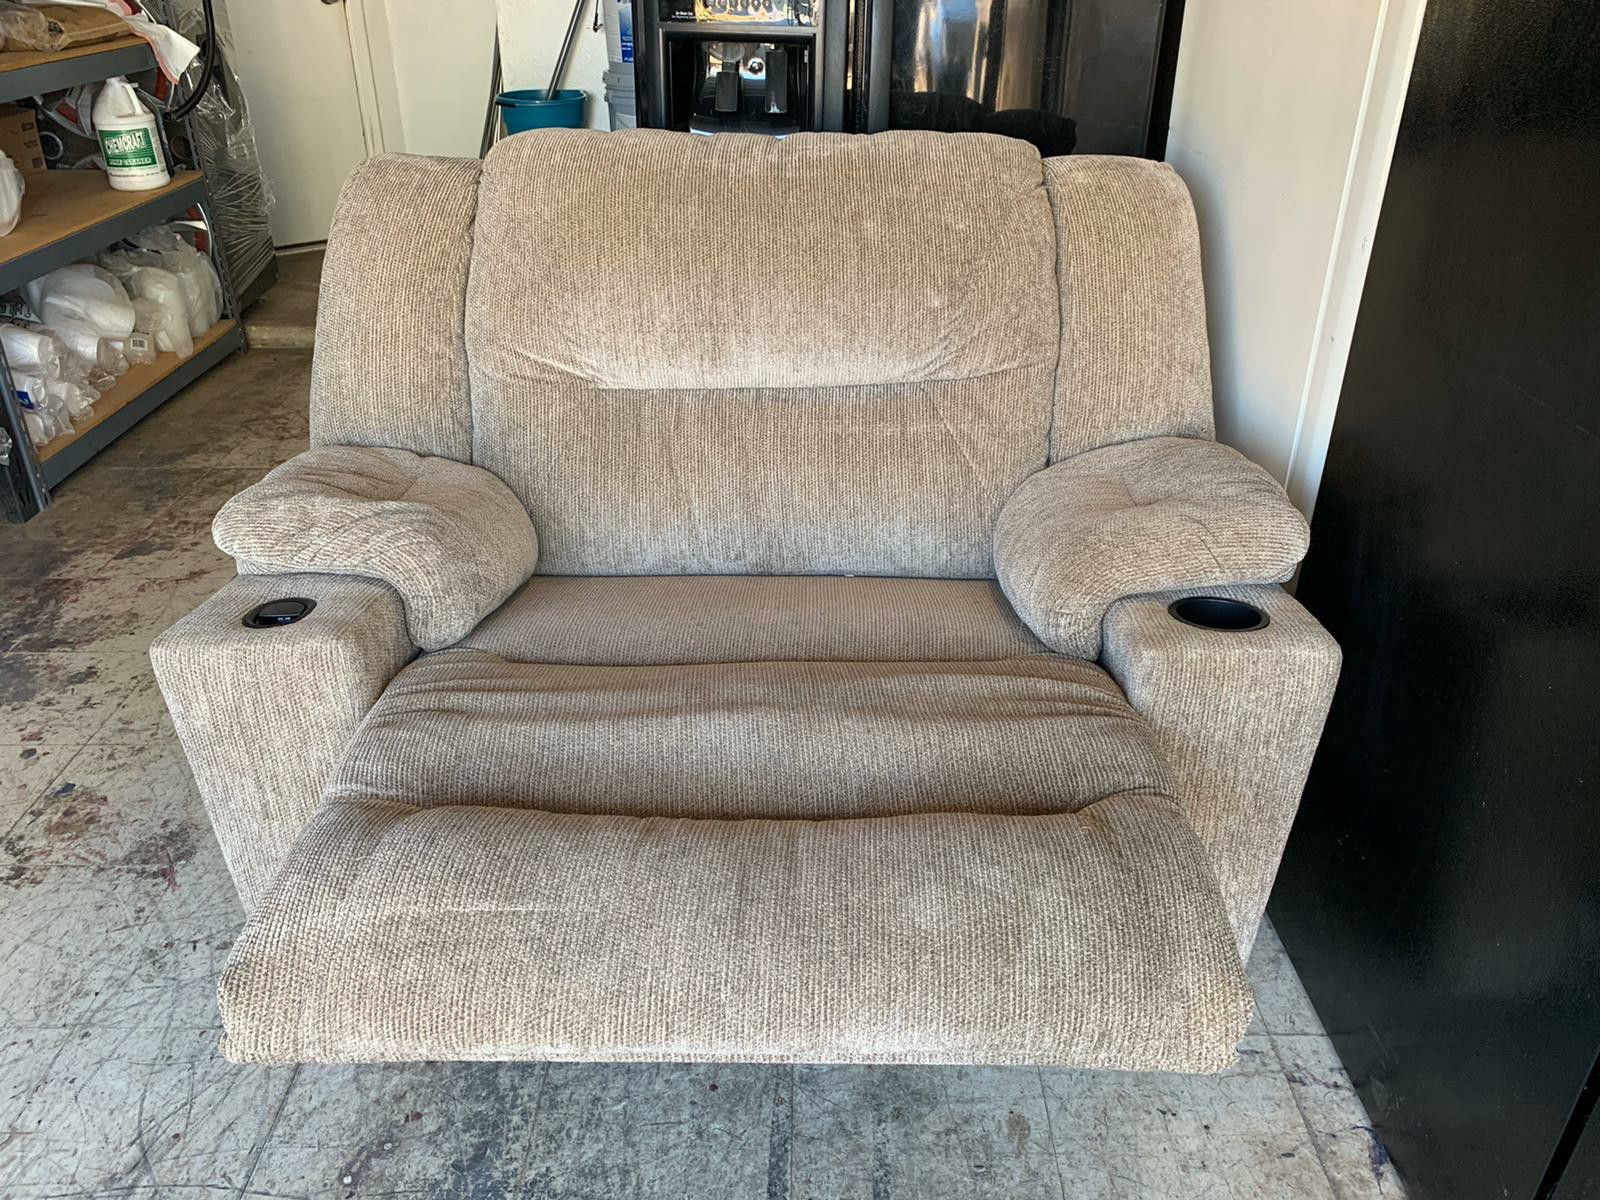 Sofa recliner chair